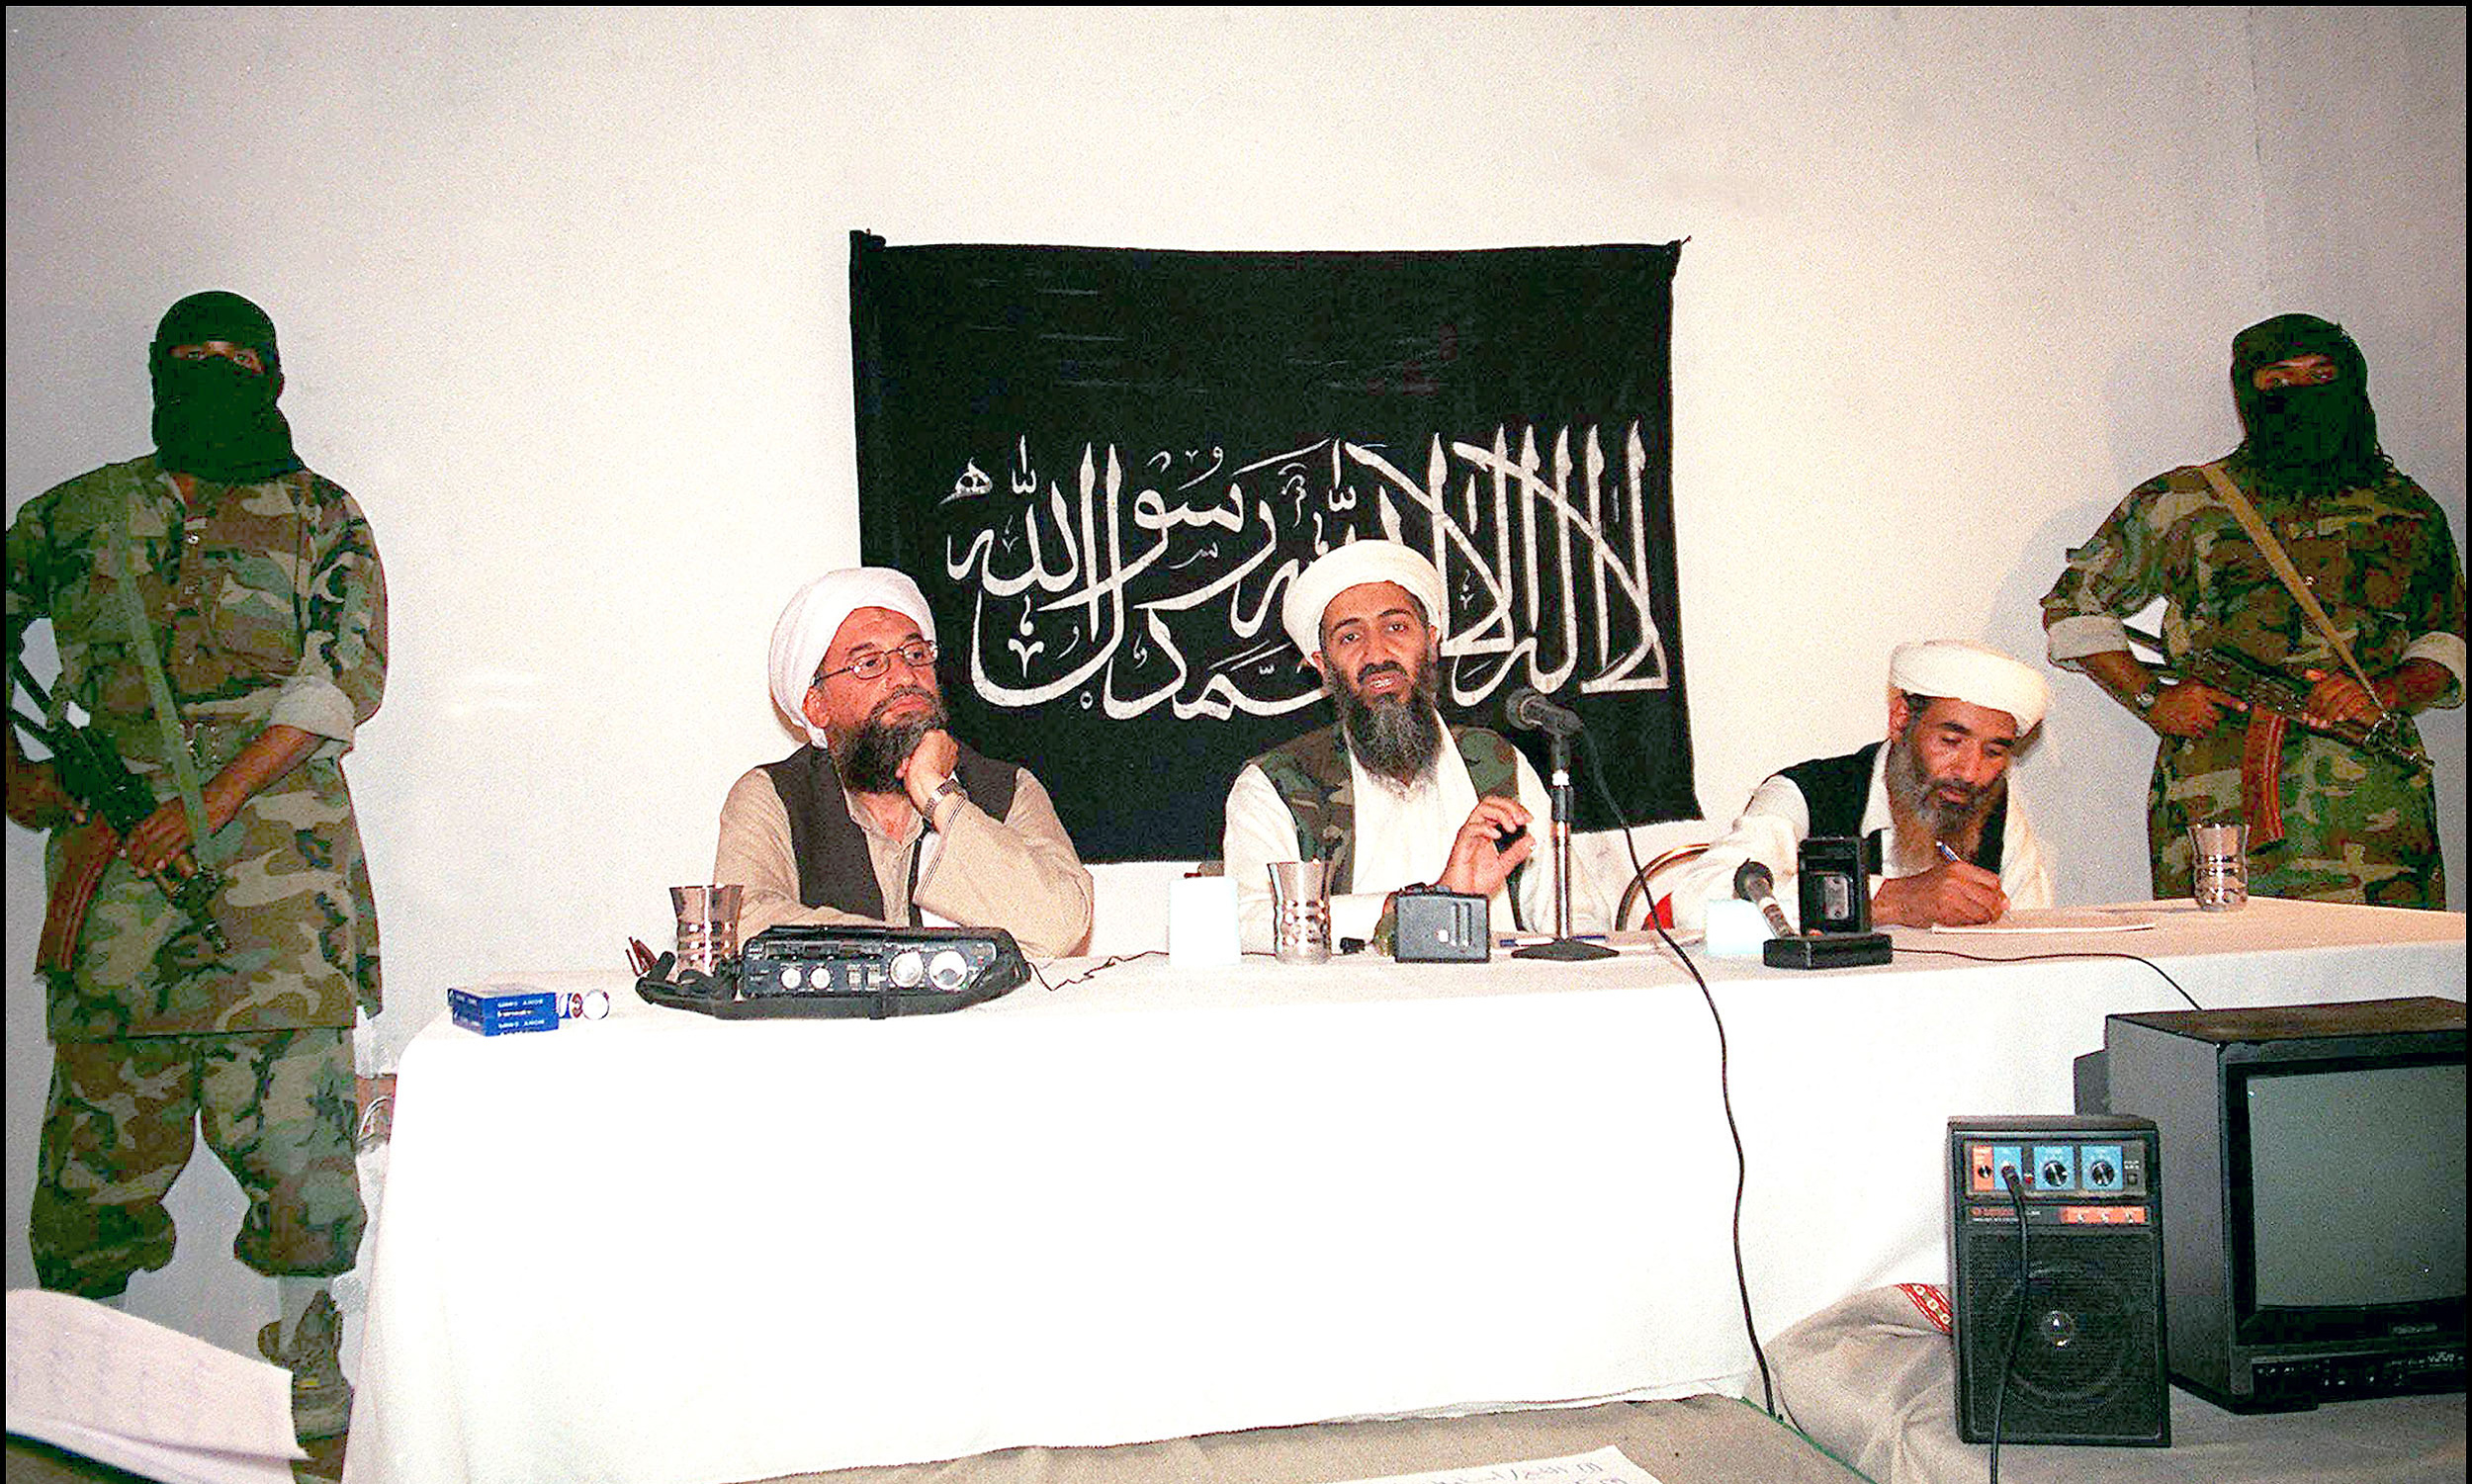 Глава аль каида. Усама Бен Ладен Аль Каида. Усама Бен Ладен террорист. Усама Бен Ладен Аль Каида 2001.